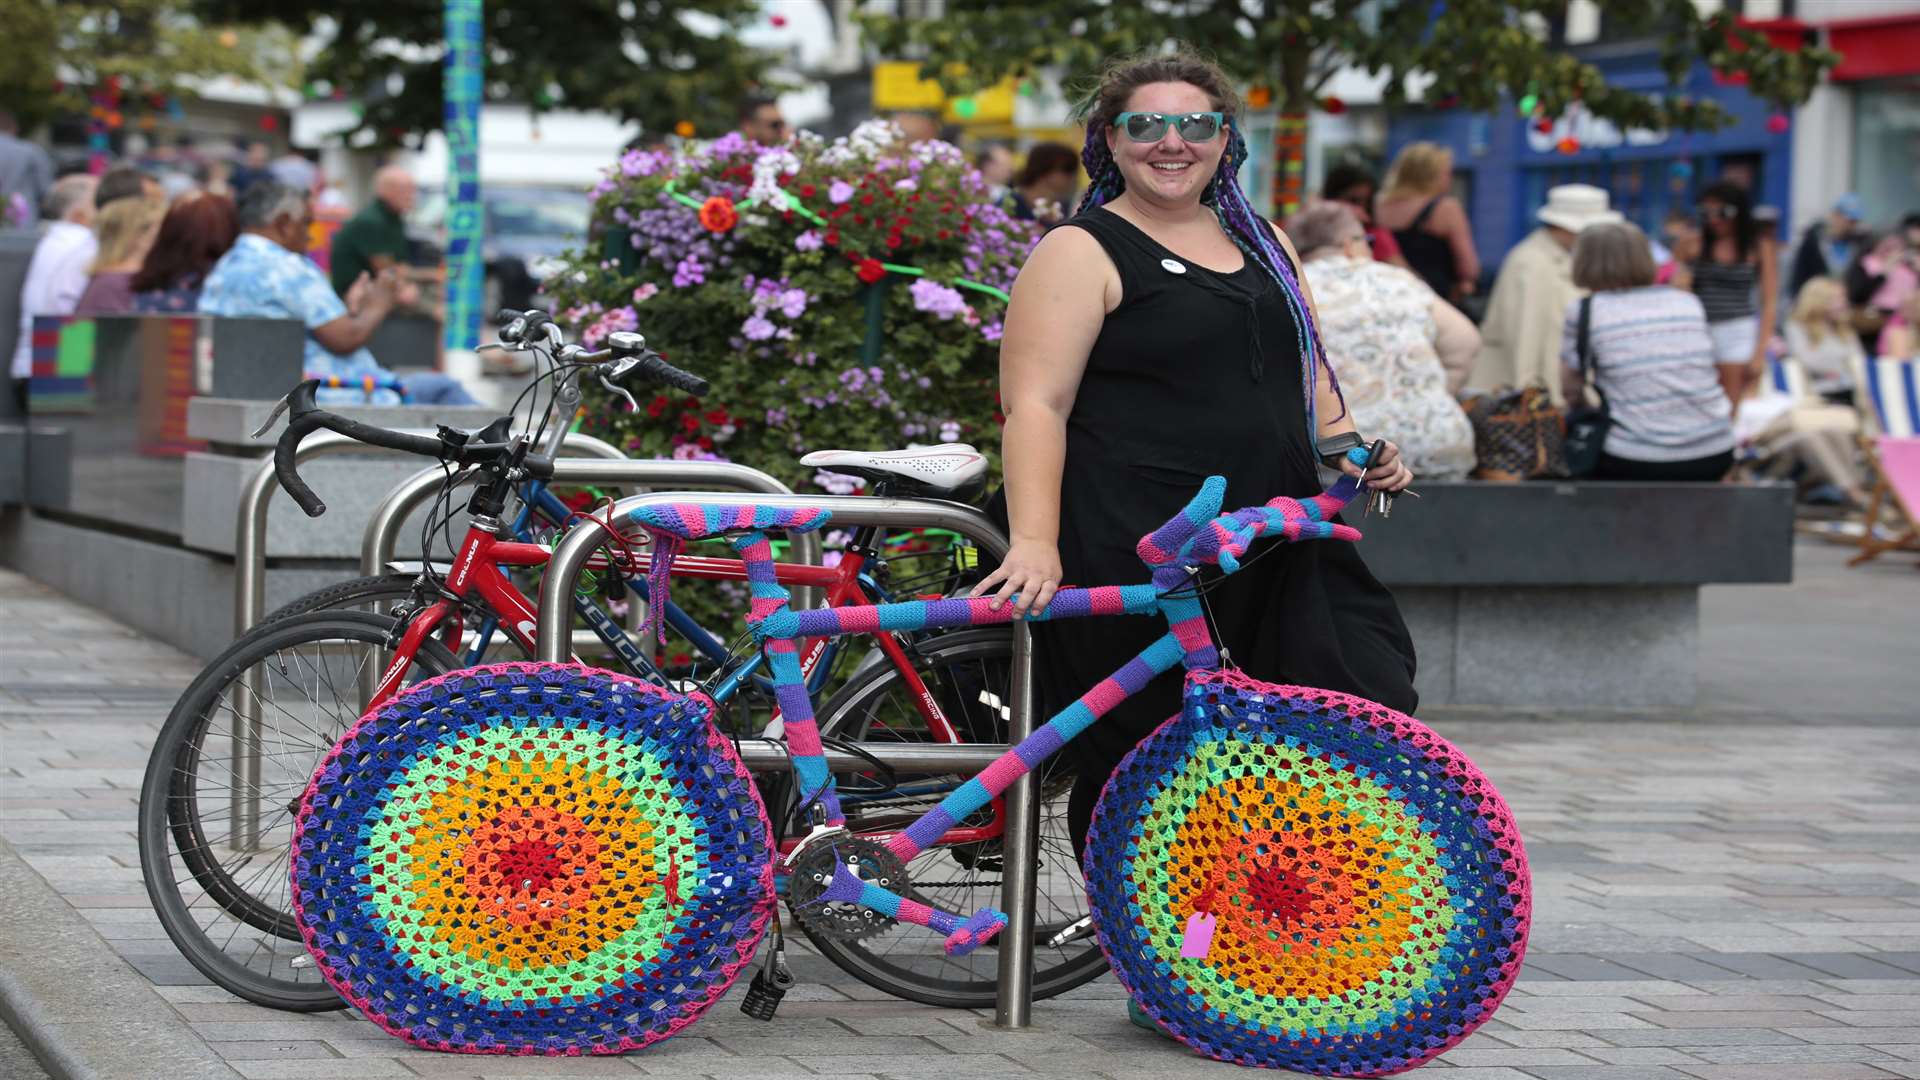 Zoe Sparkle with a yarn-bombed bike